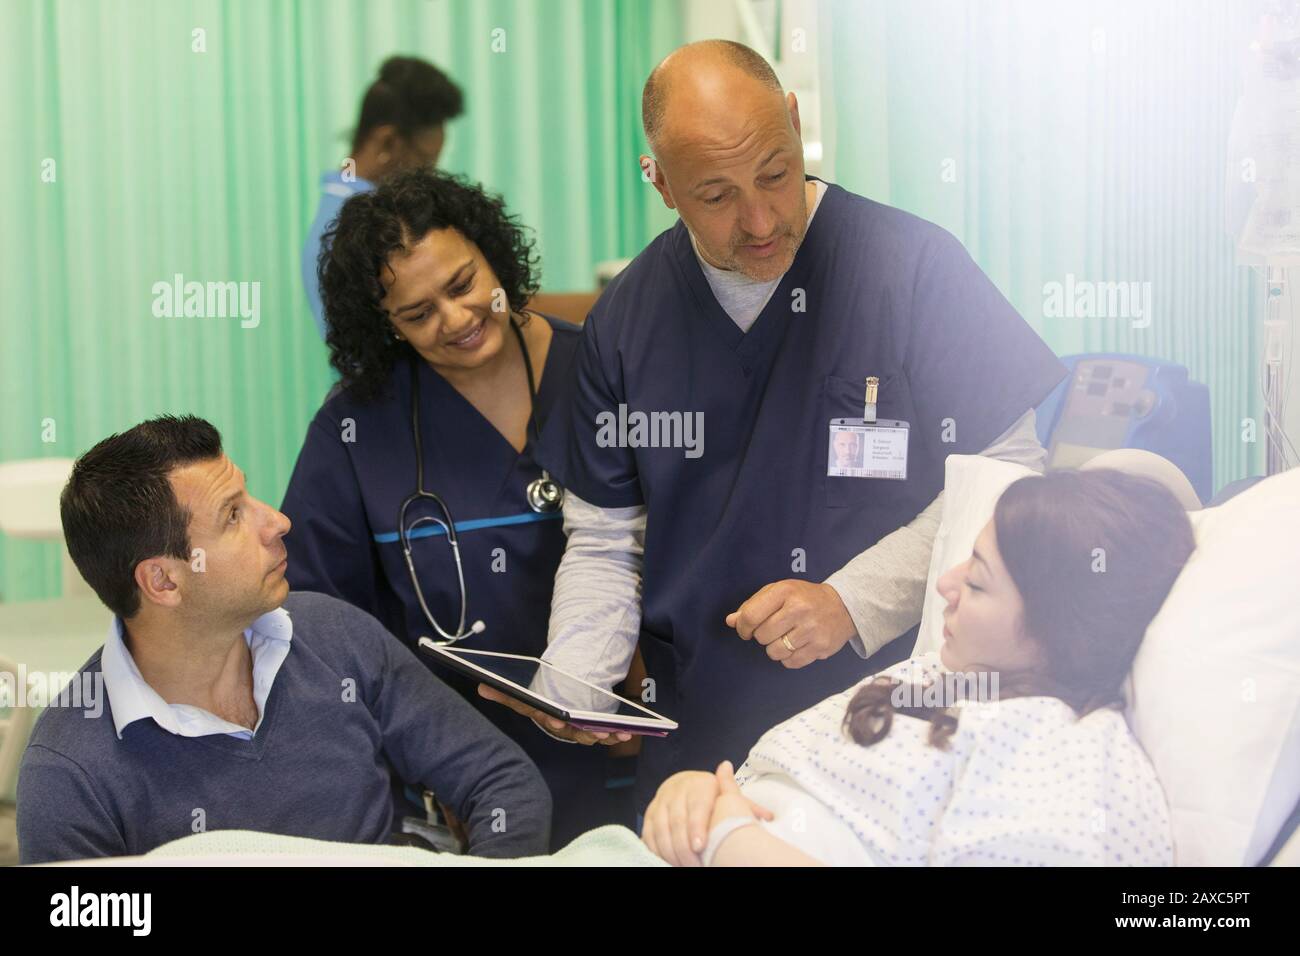 Médecins avec tablette numérique en train de faire des rondes, en parlant avec le patient dans le service hospitalier Banque D'Images